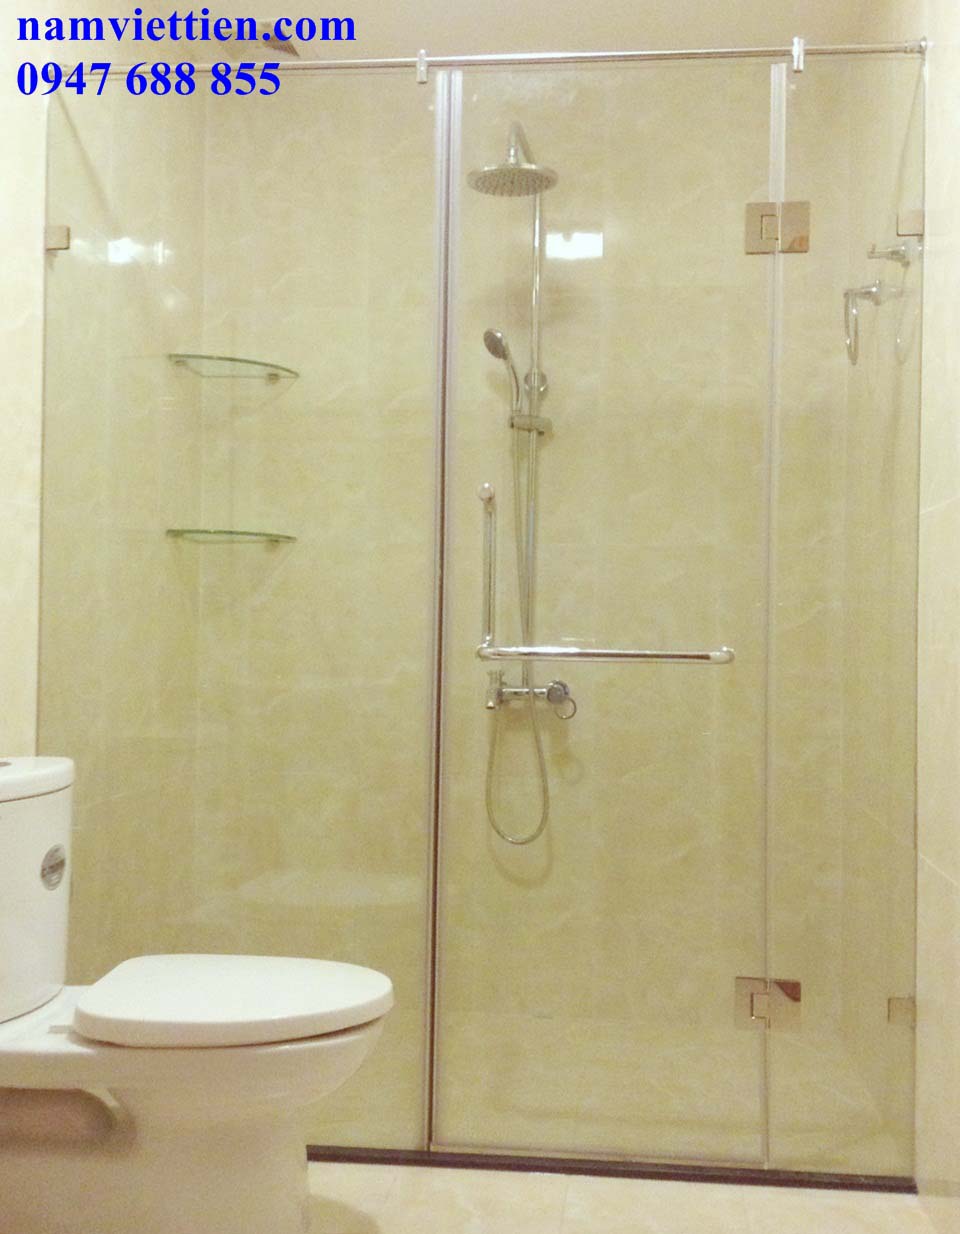 Mẫu phòng tắm sẽ mang đến cho bạn các lựa chọn thiết kế đa dạng và phù hợp với mọi phong cách. Hãy cùng chiêm ngưỡng hình ảnh mẫu phòng tắm để tìm kiếm sự lựa chọn tốt nhất cho ngôi nhà của bạn.